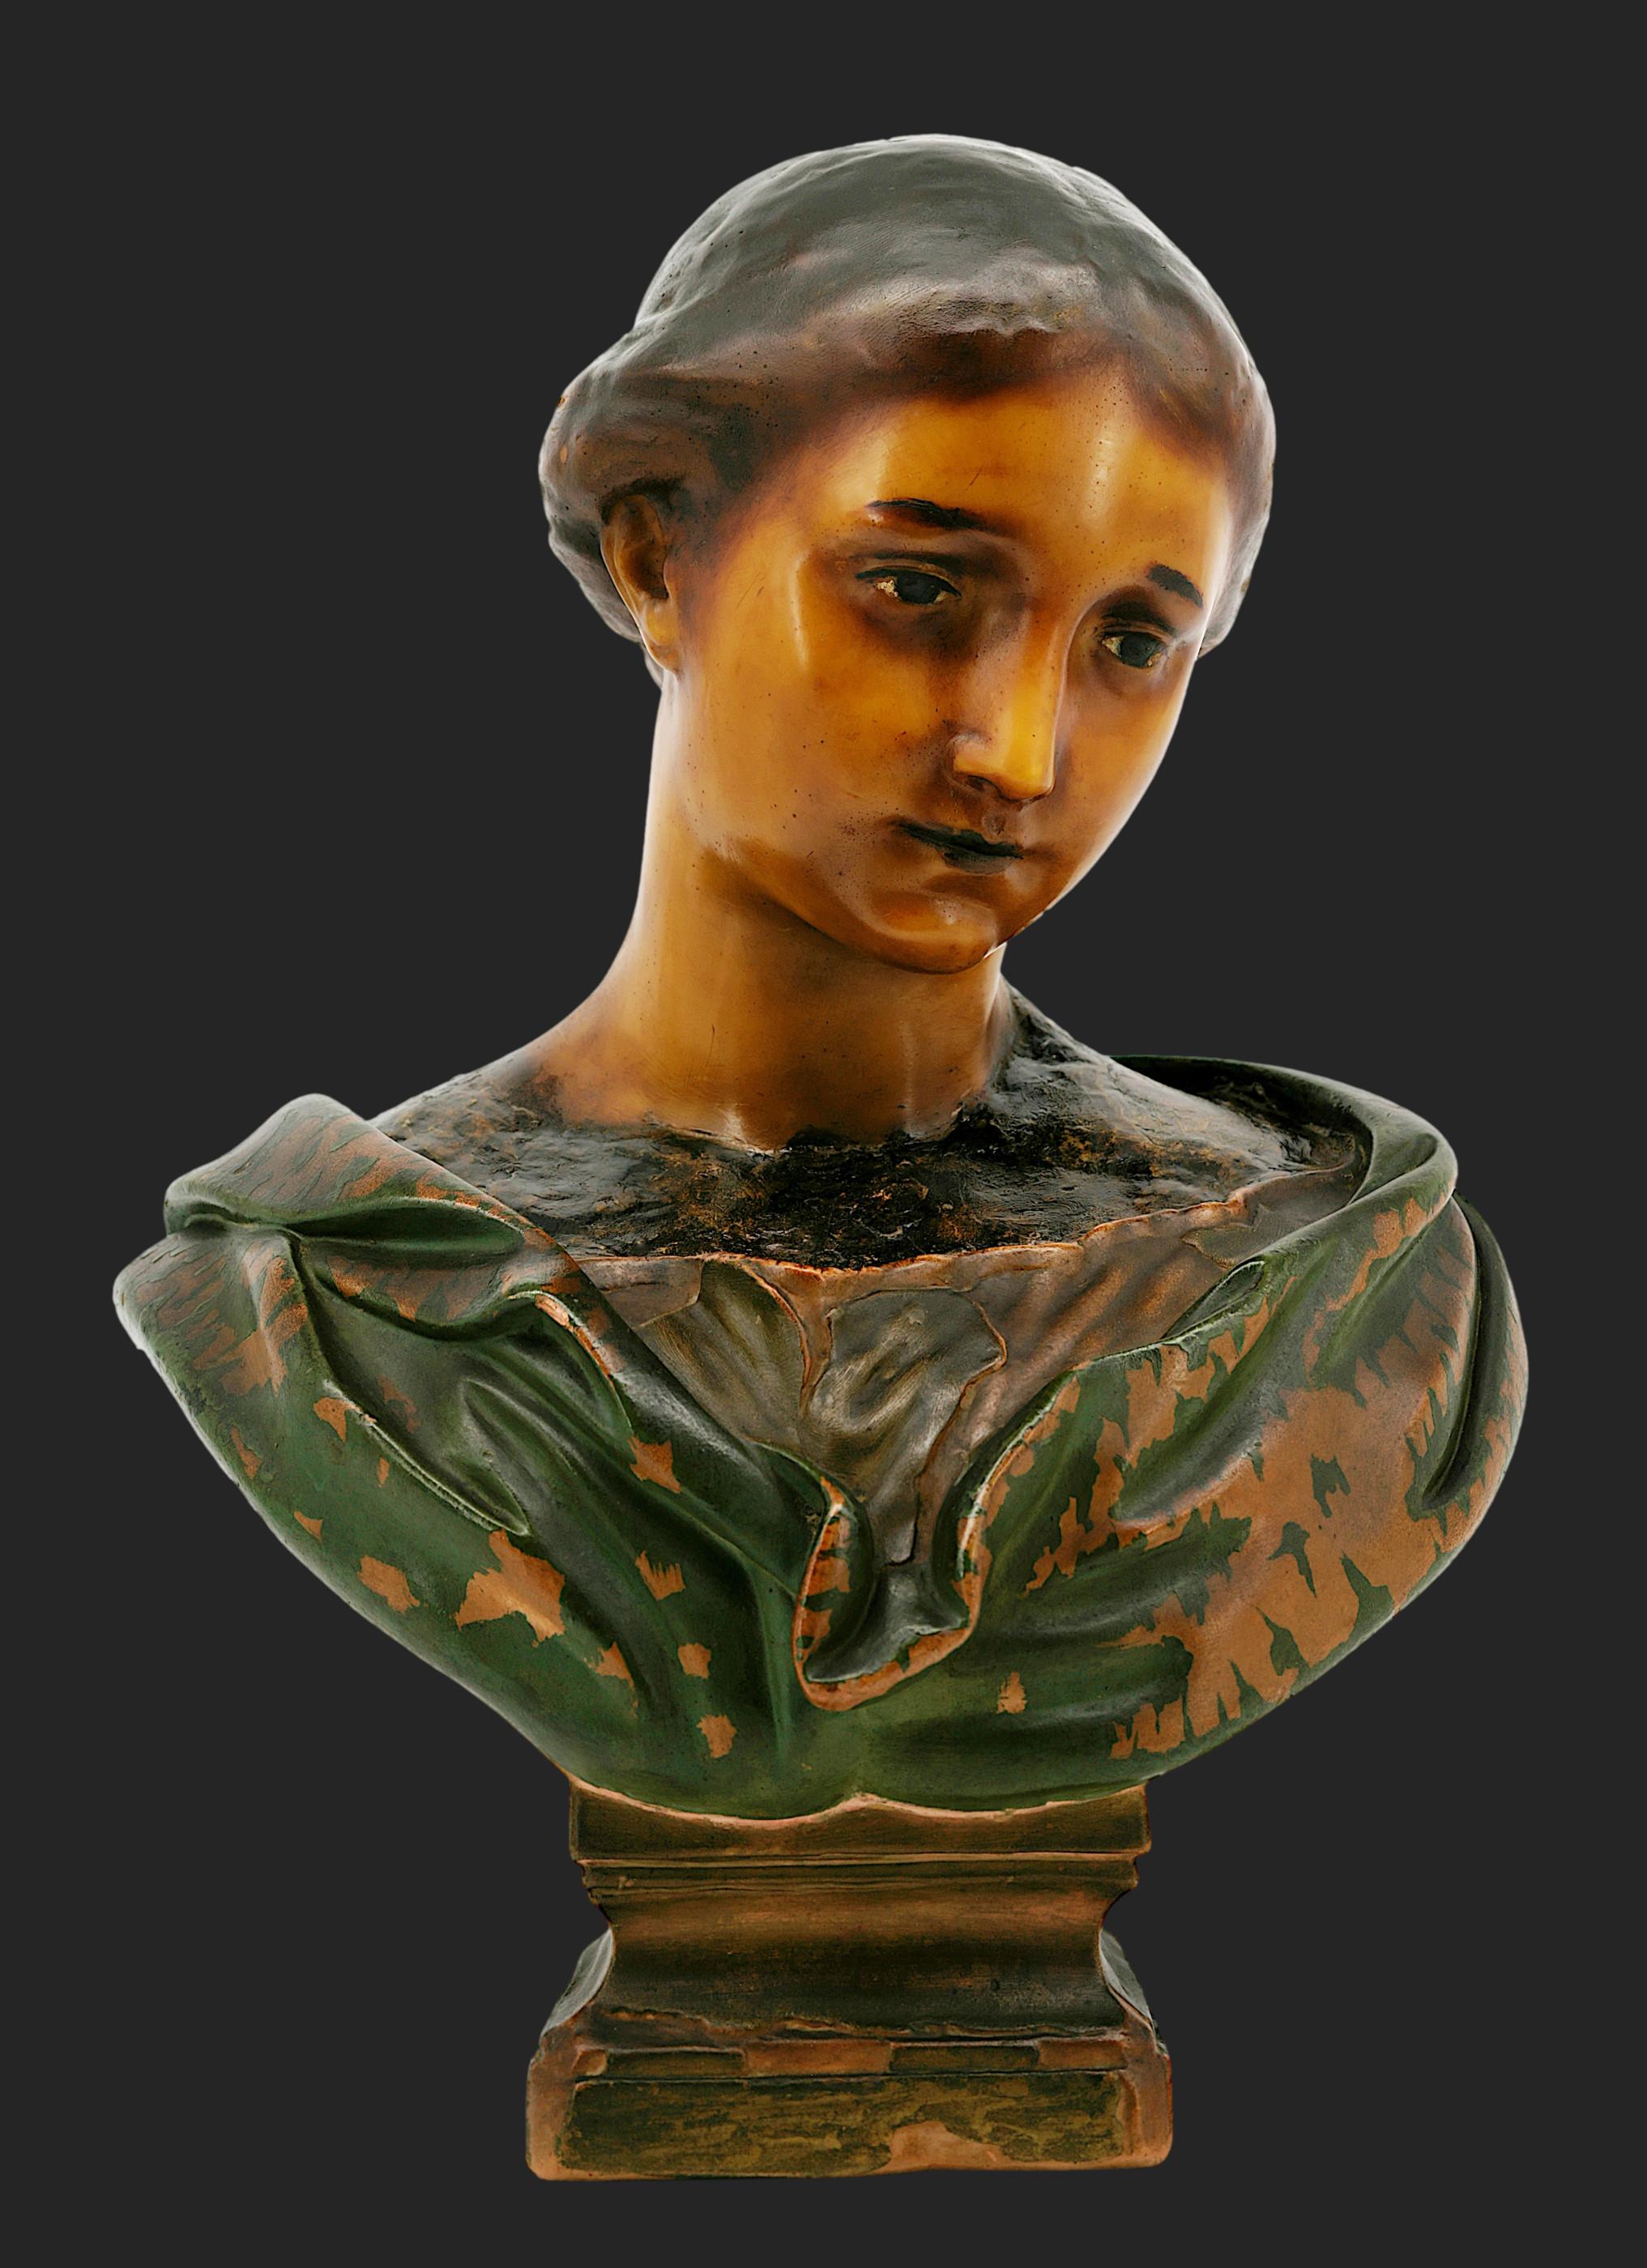 Wachs junges Mädchen  Büstenskulptur von Mme Arondelle, 2 rue du Louvre, Paris, Frankreich, um 1900. Polychromes Wachs. Nach dem berühmten Wachs-Kopf aus dem Museum von Lille (Frankreich). Höhe: 17.9